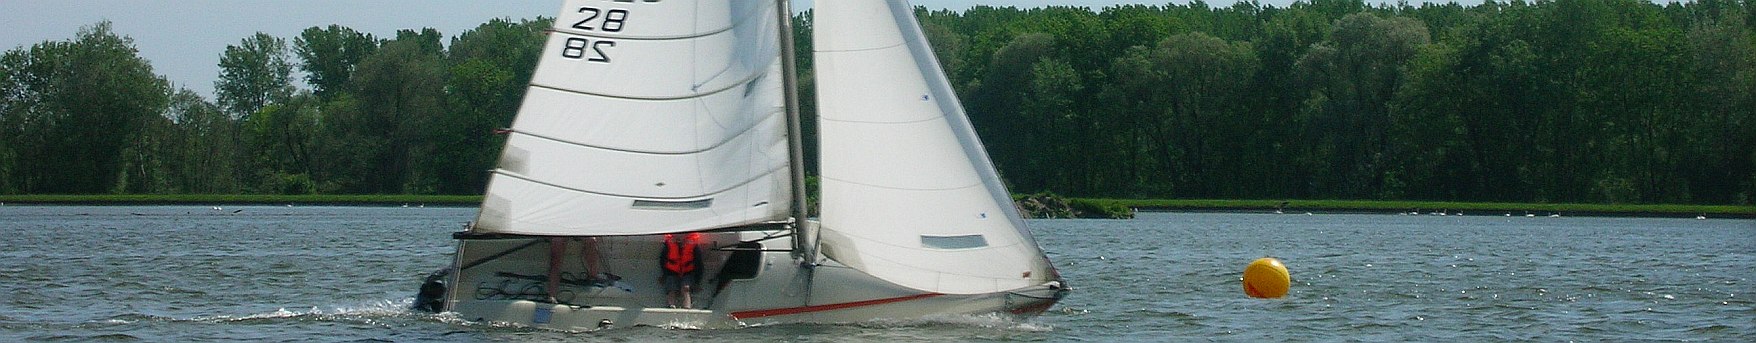 SCND – Segelclub Neuburg Donau